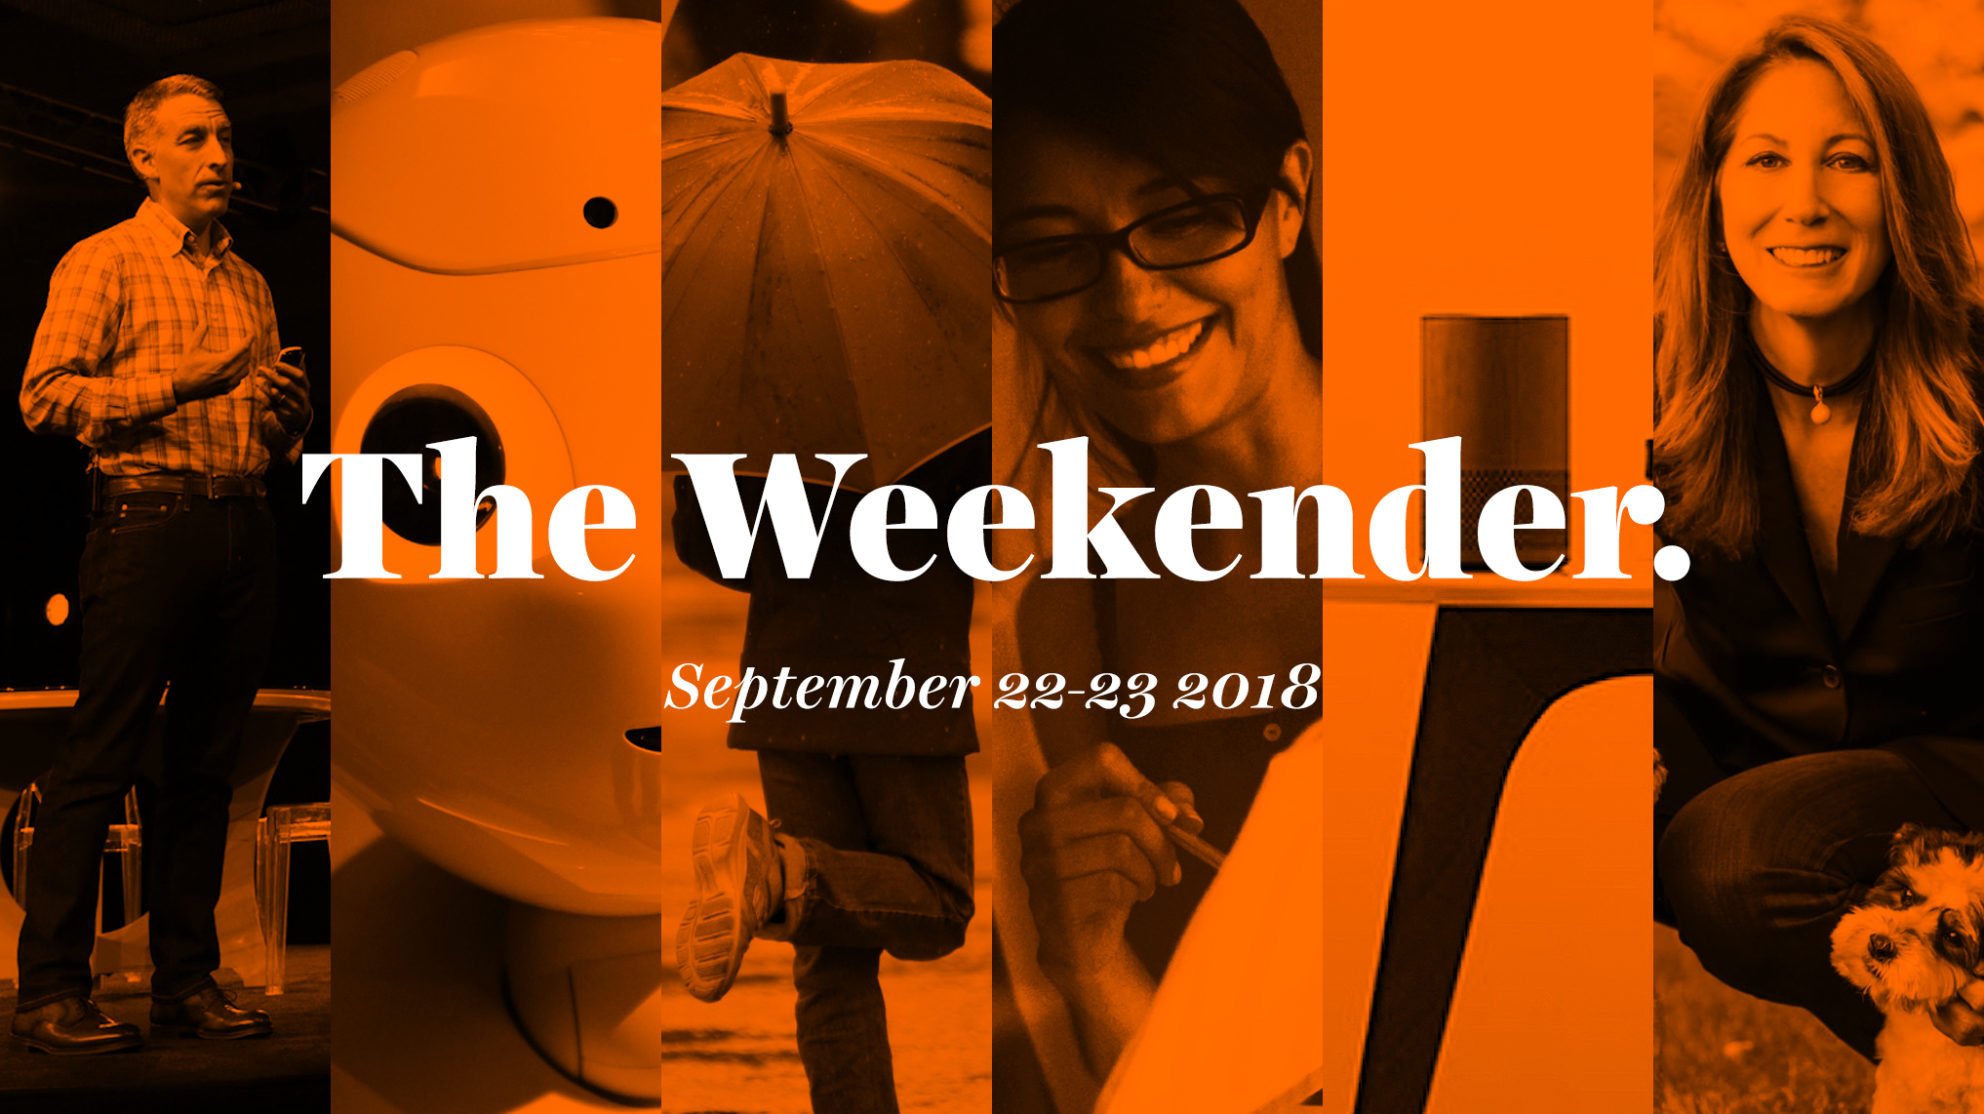 The Inman Weekender, September 22-23, 2018